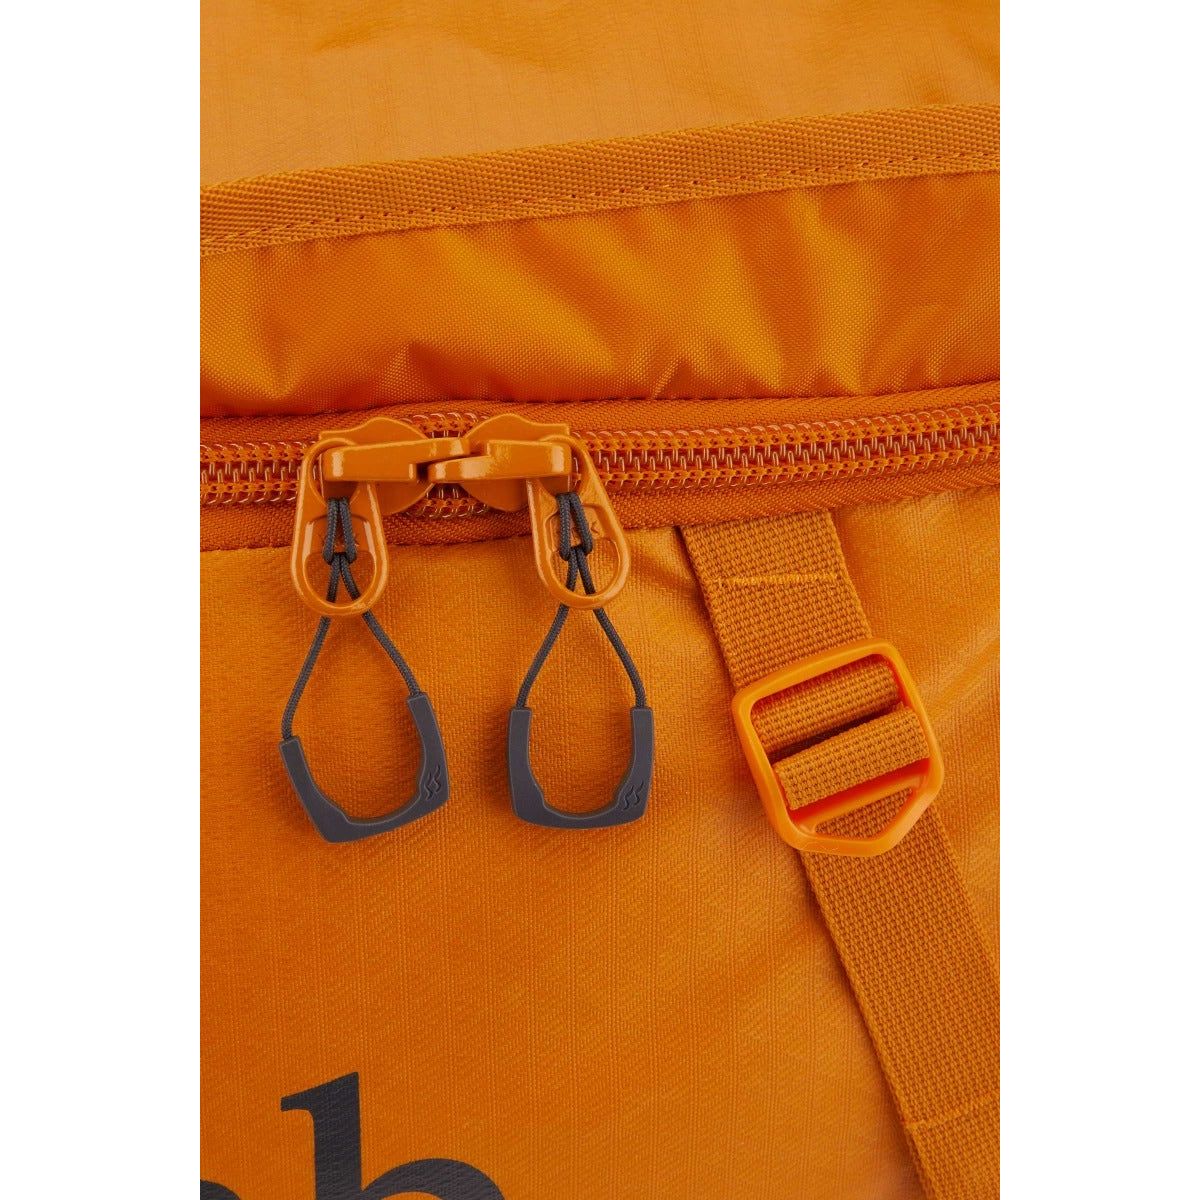 Rab Escape Kit Bag 50 Litre